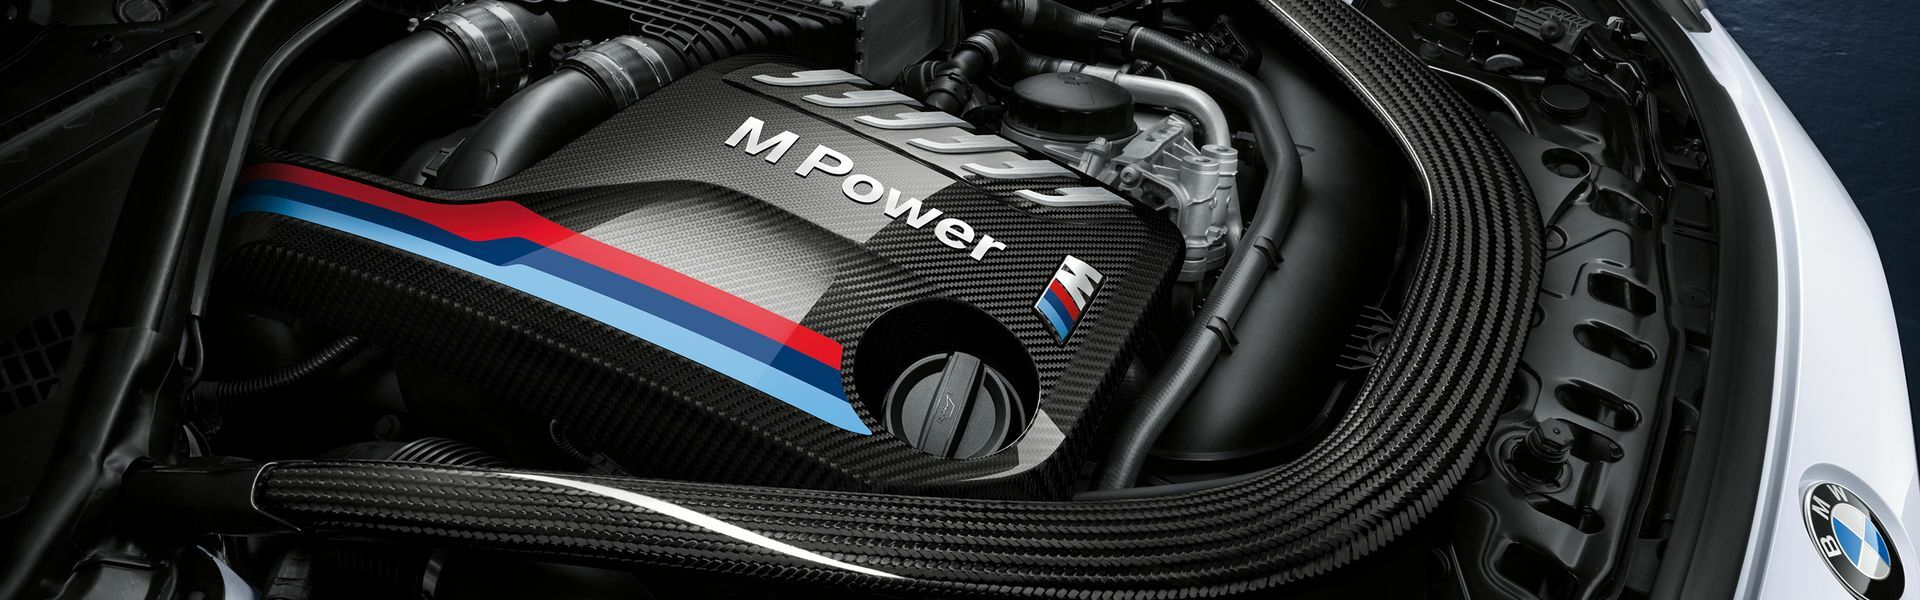 Zvýšení výkonu/ Softwarové úpravy/ Drobné performance díly pro automobil Porsche Panamera Turbo S 970